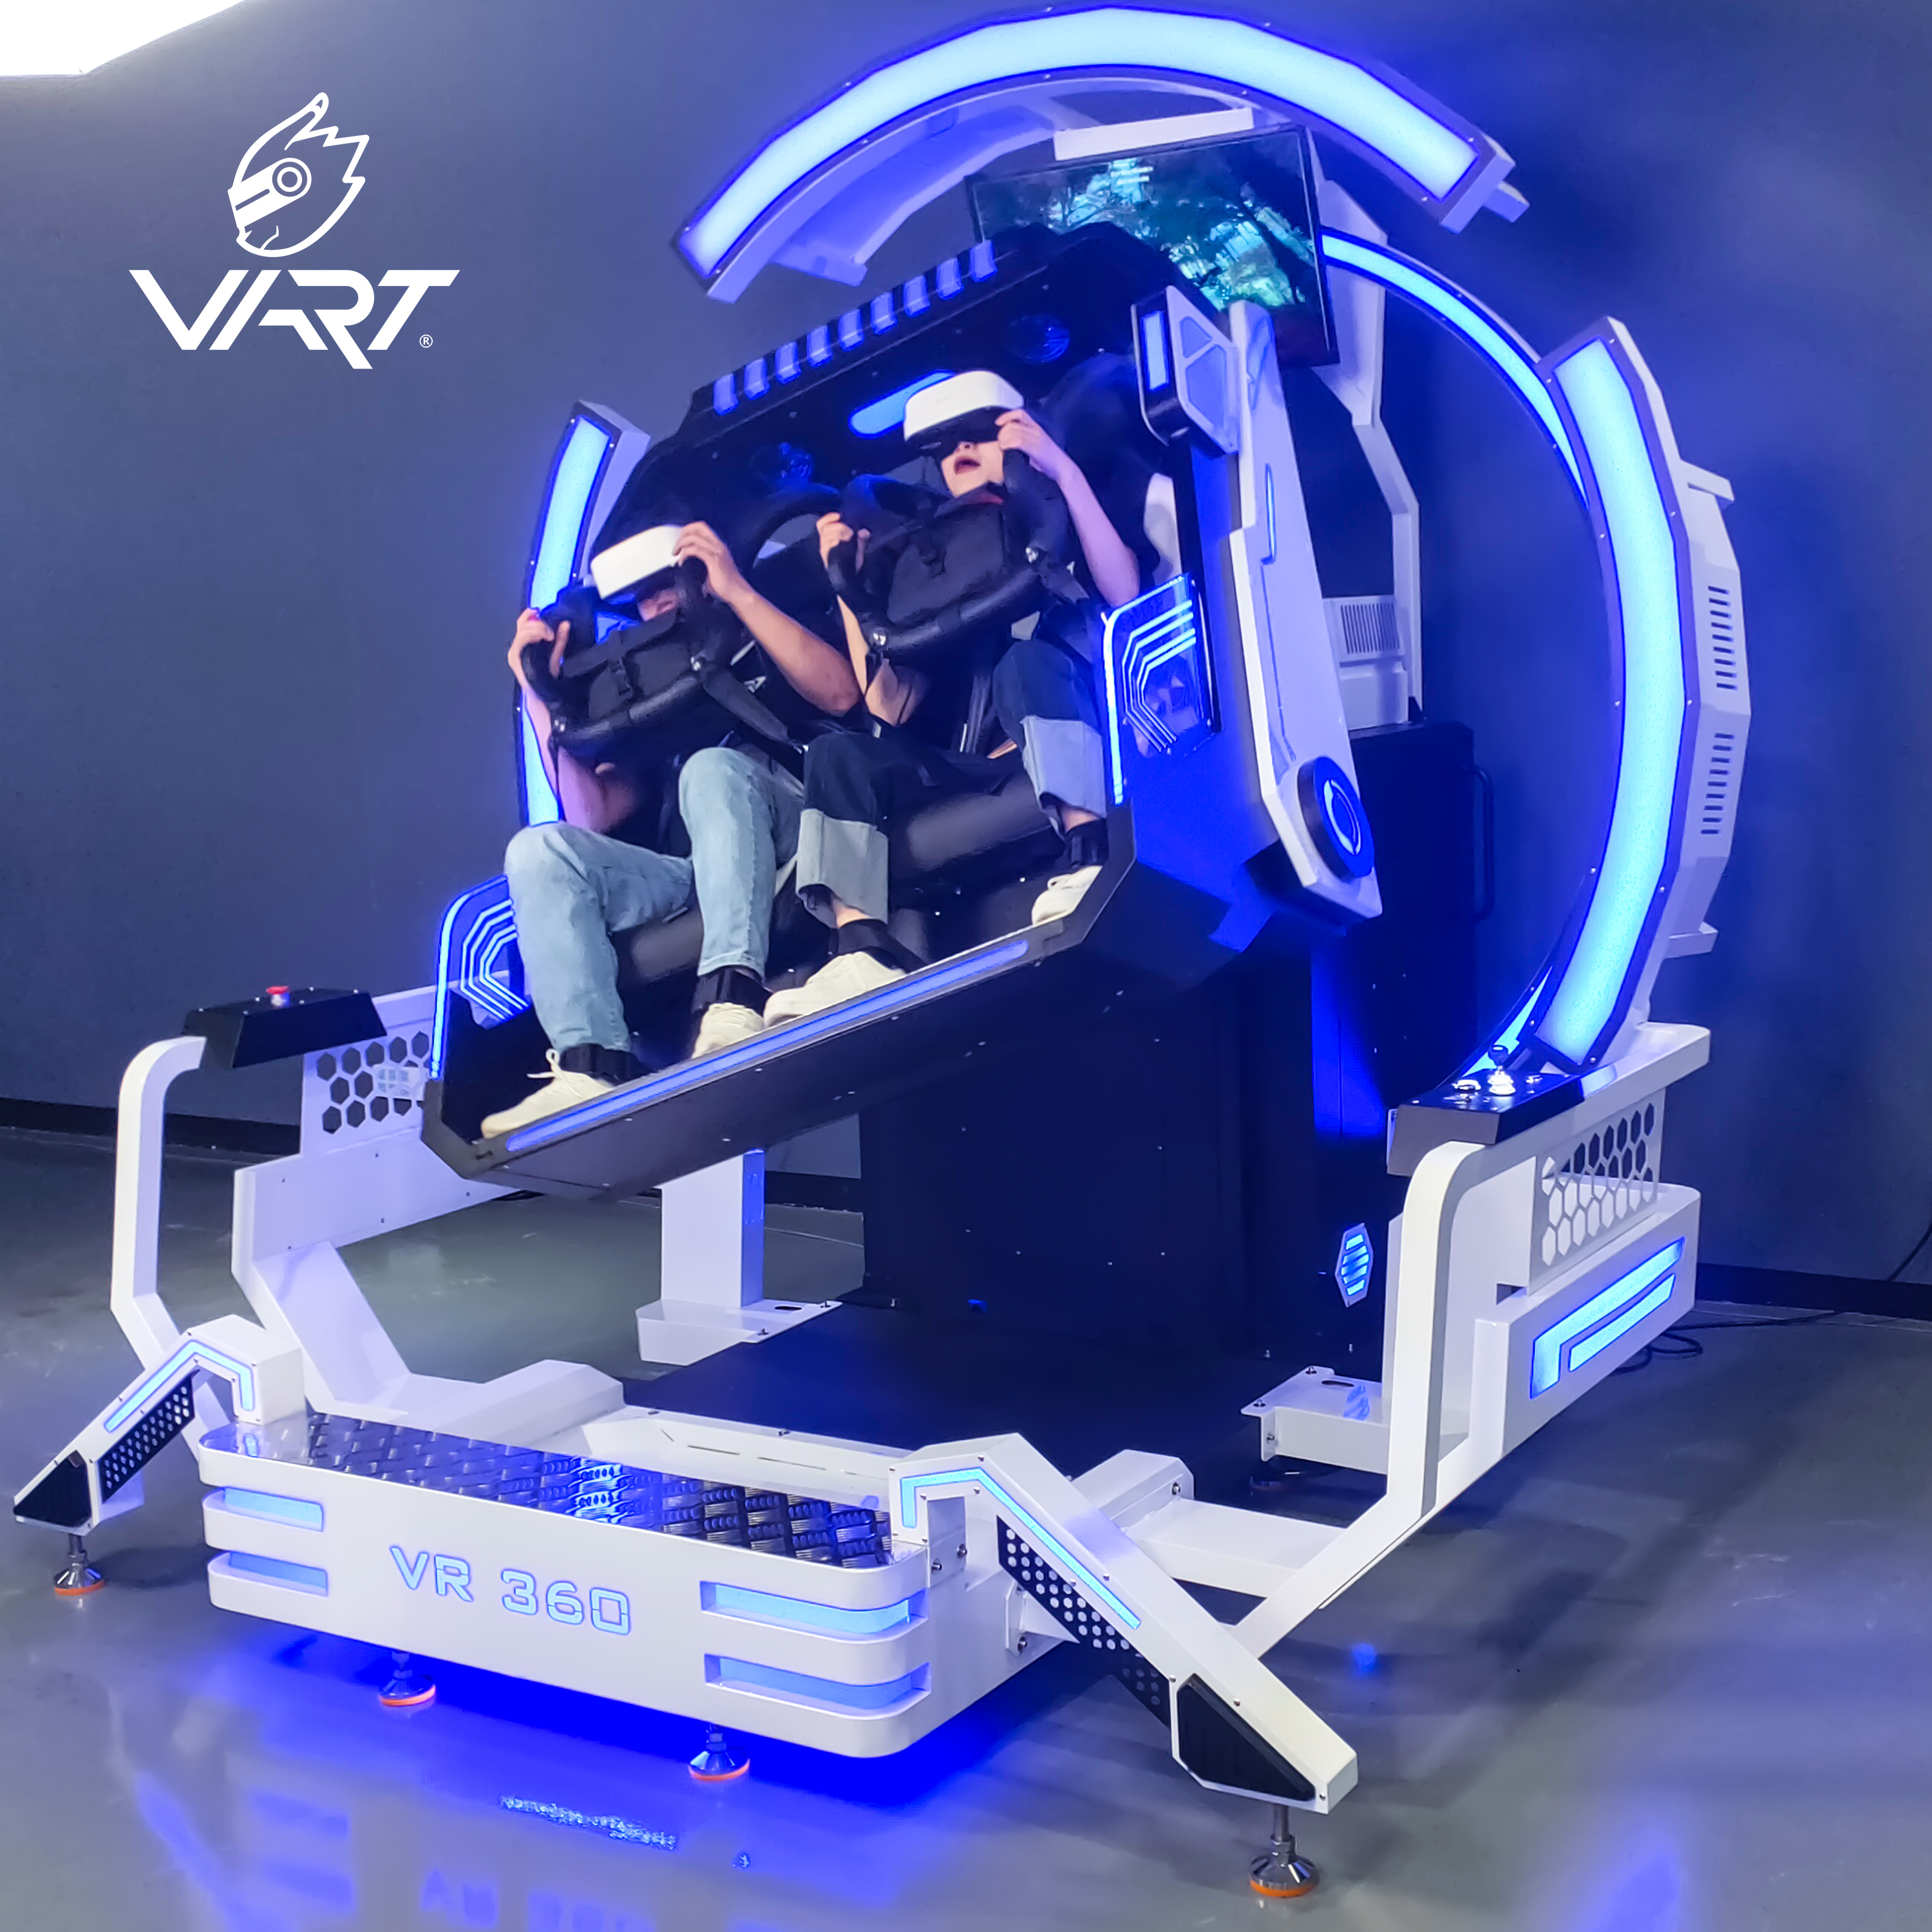 Lágt verð fyrir 9d Vr 360 Degree Headtracking Roller Coaster Simulator Plus Virtual Reality Vibration 9d kvikmyndahús